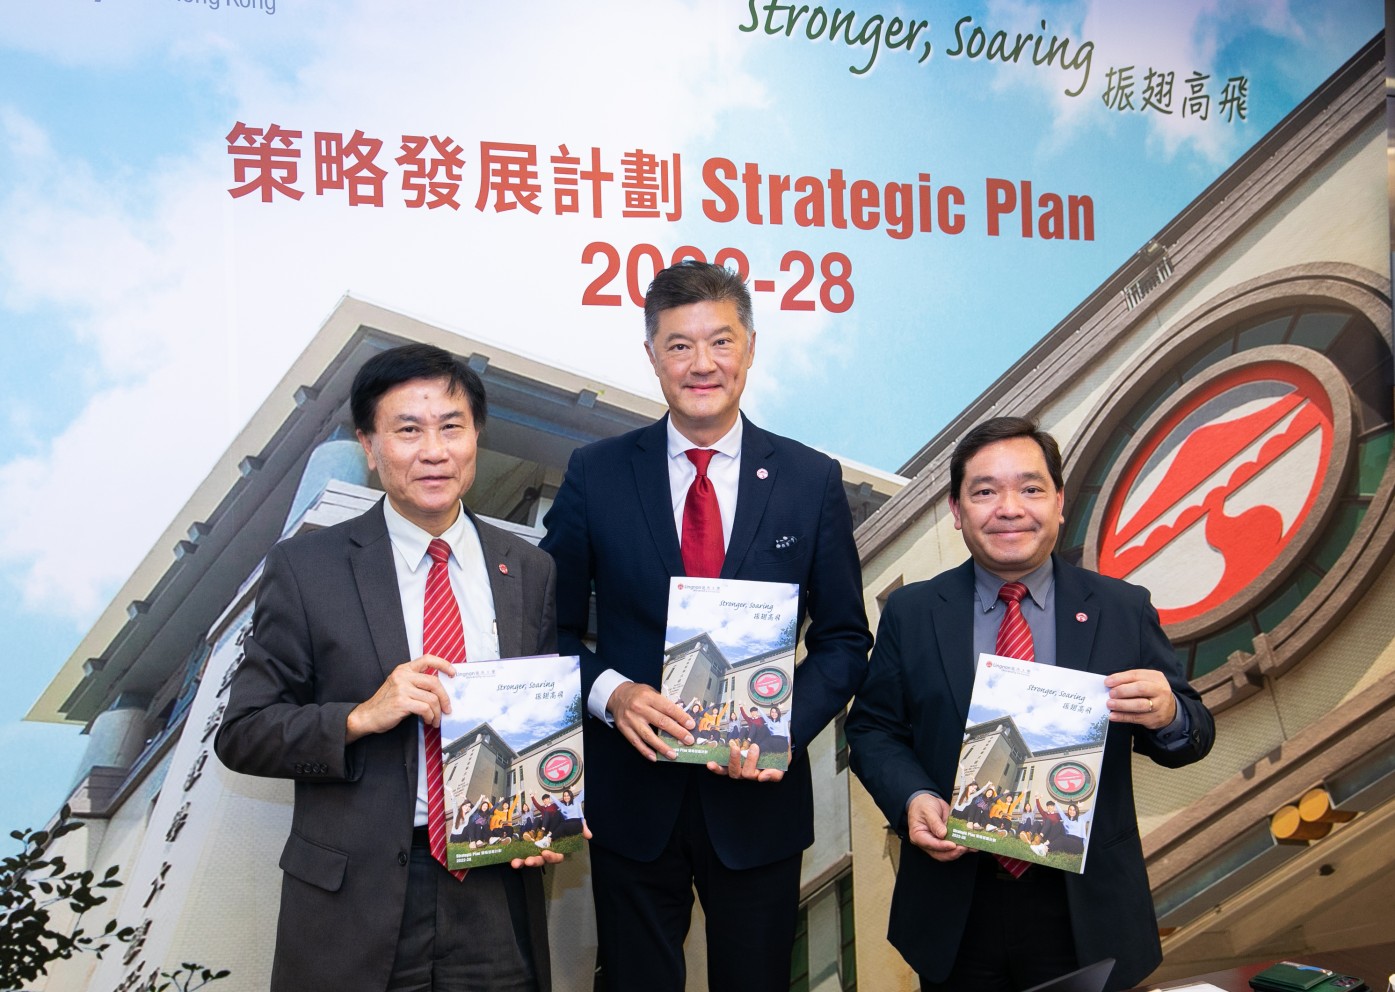 岭大校长郑国汉教授（左）、岭大校董会主席姚祖辉先生（中）、岭大副校长莫家豪教授（右）简介岭大的《2022-28年度策略发展计划》。